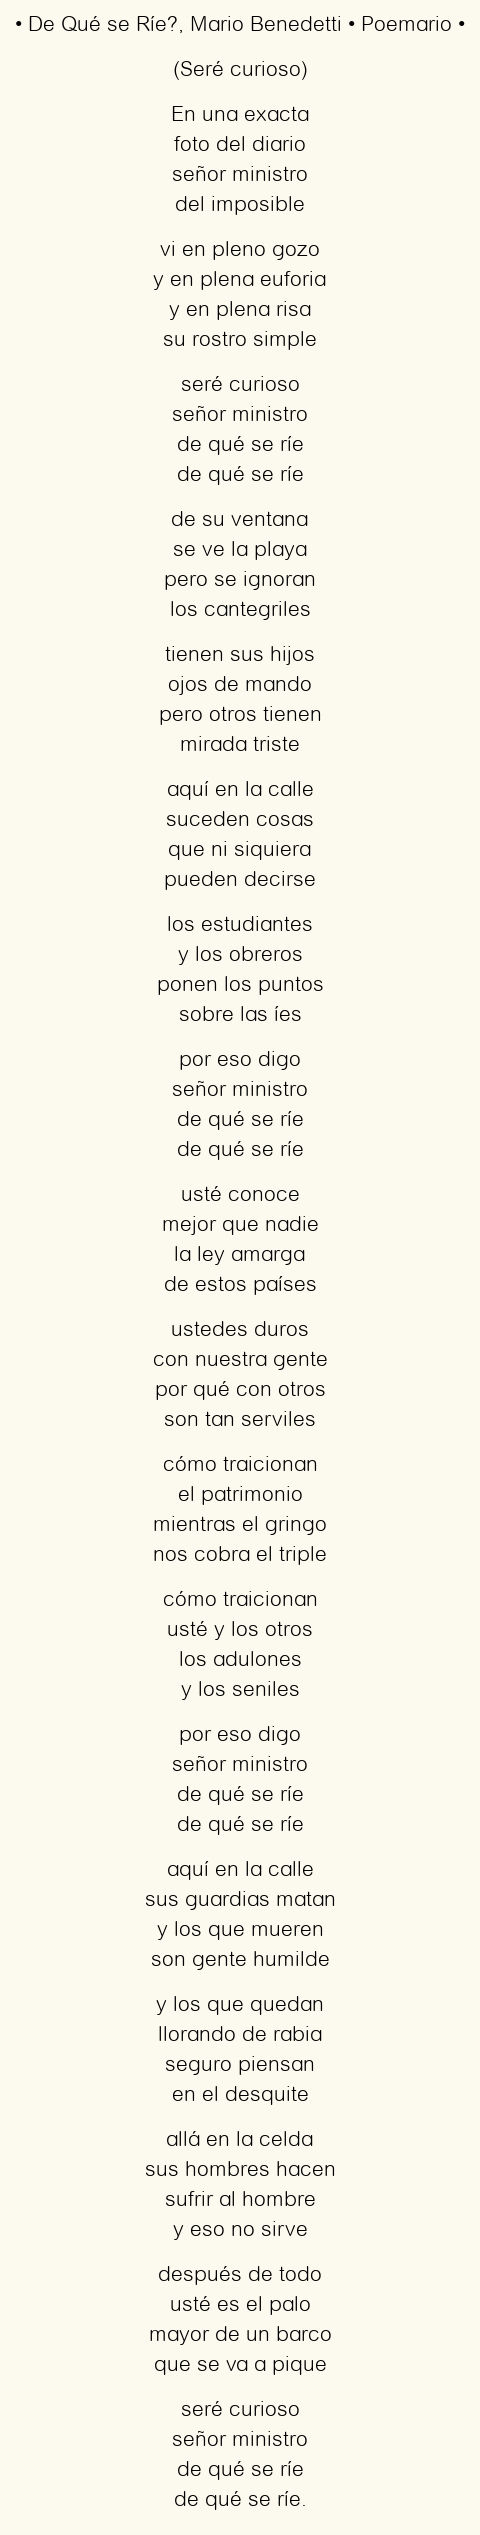 Imagen con el poema De Qué se Ríe?, por Mario Benedetti